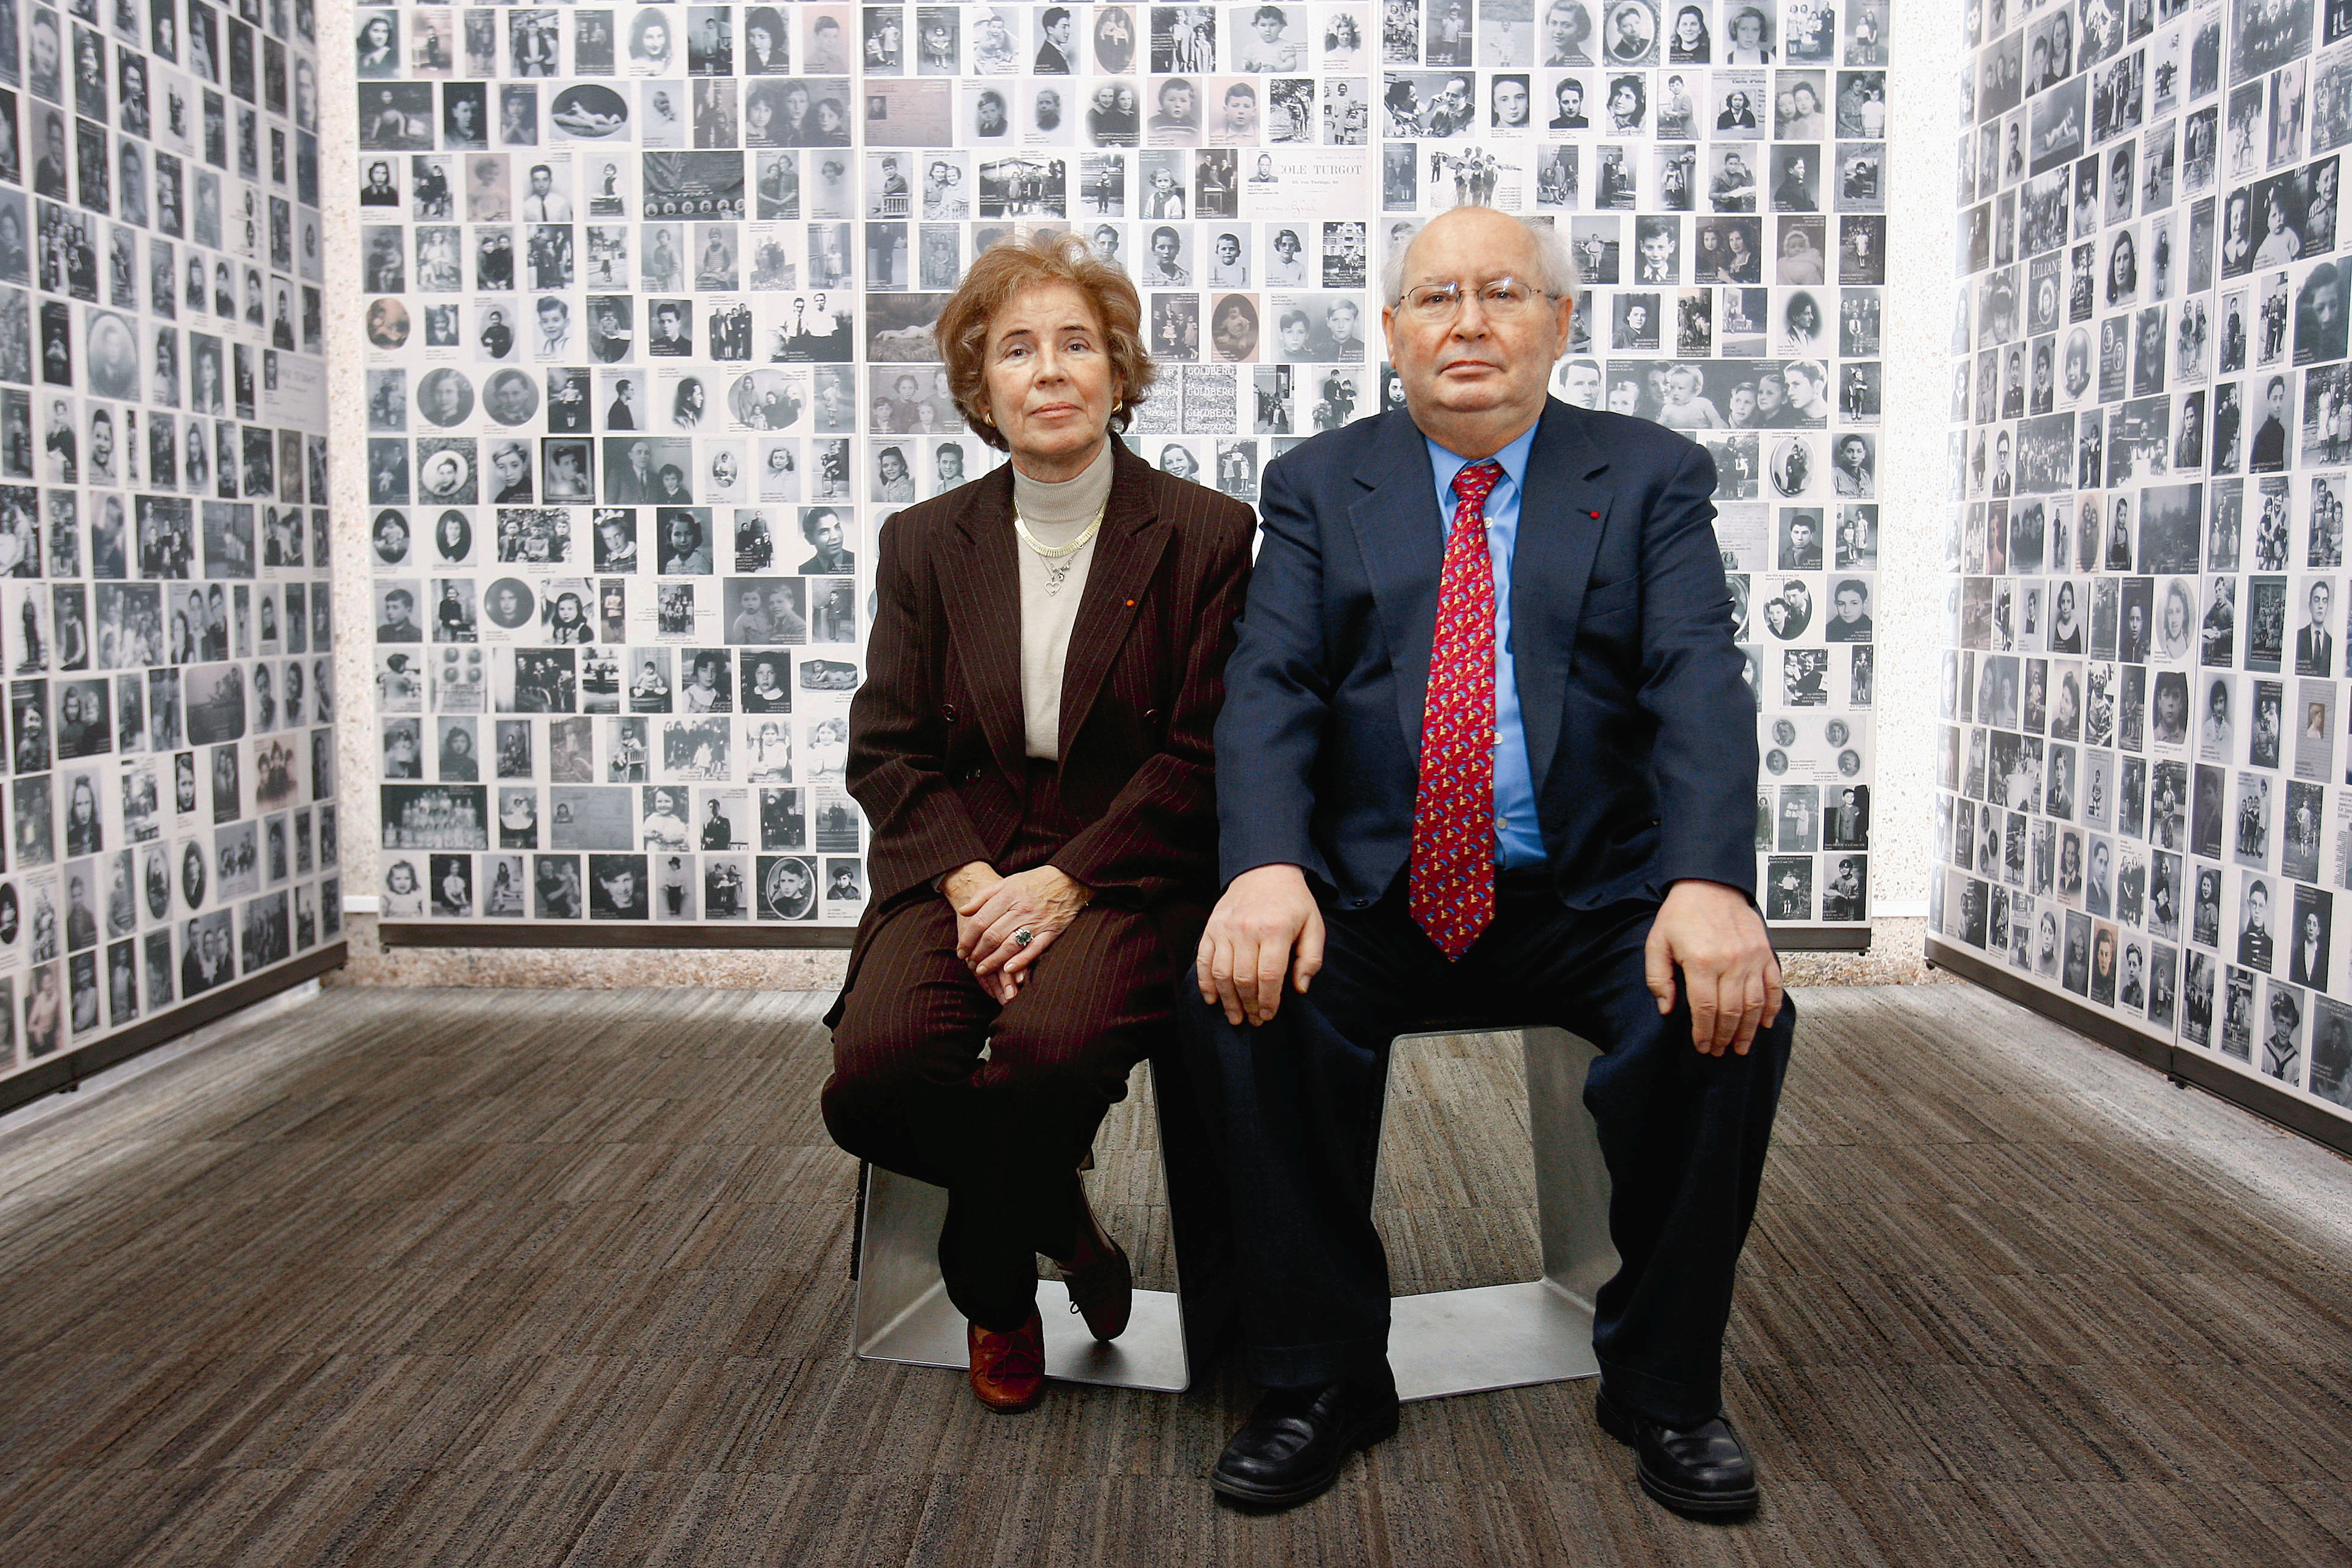 Μπεάτε και Σερζ Κλάρσφελντ: Το ζευγάρι που κυνήγησε τους Ναζί